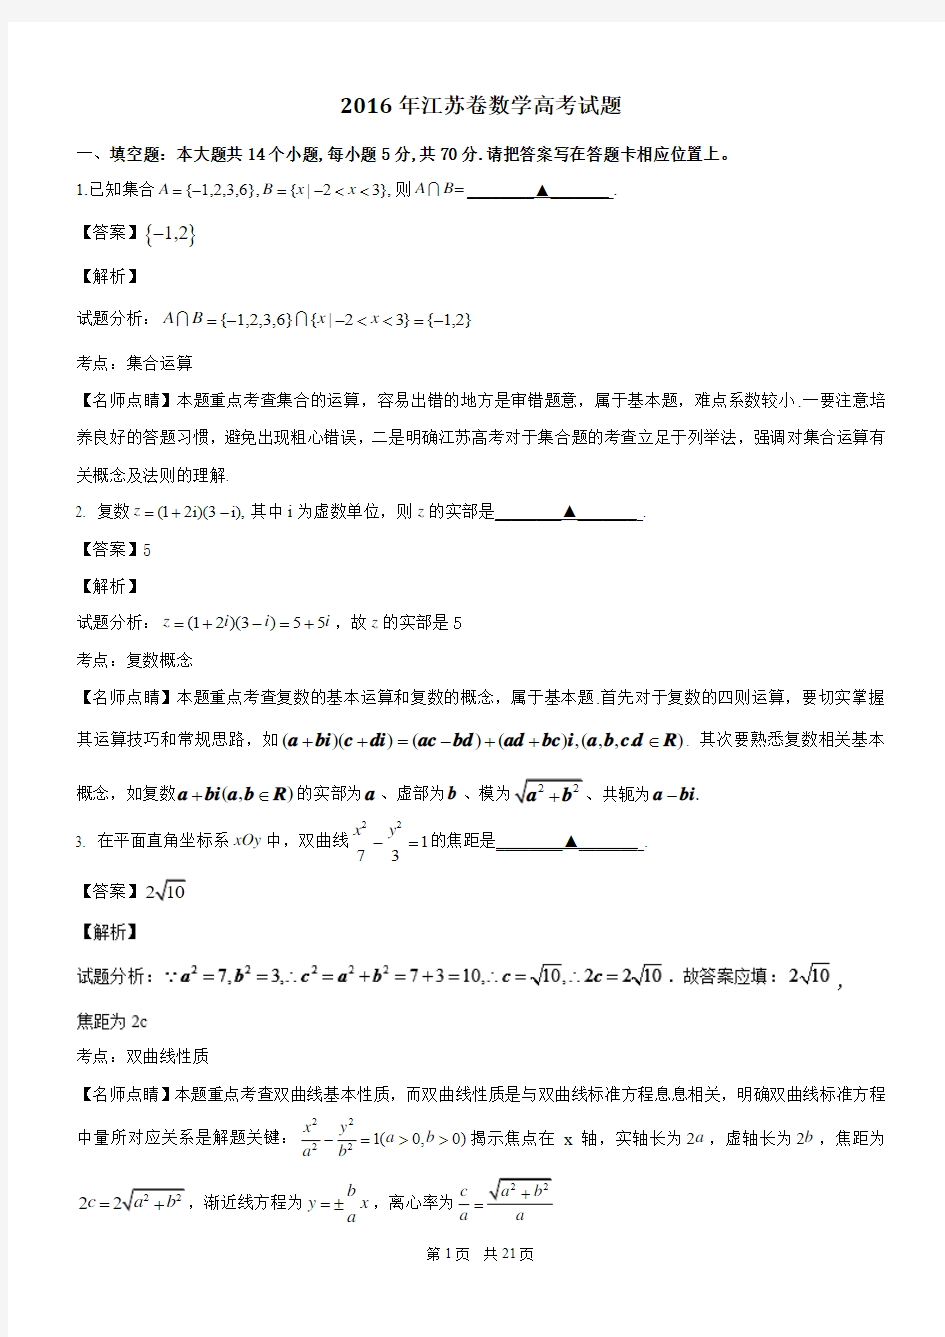 2016年高考试题(数学)江苏卷 解析版